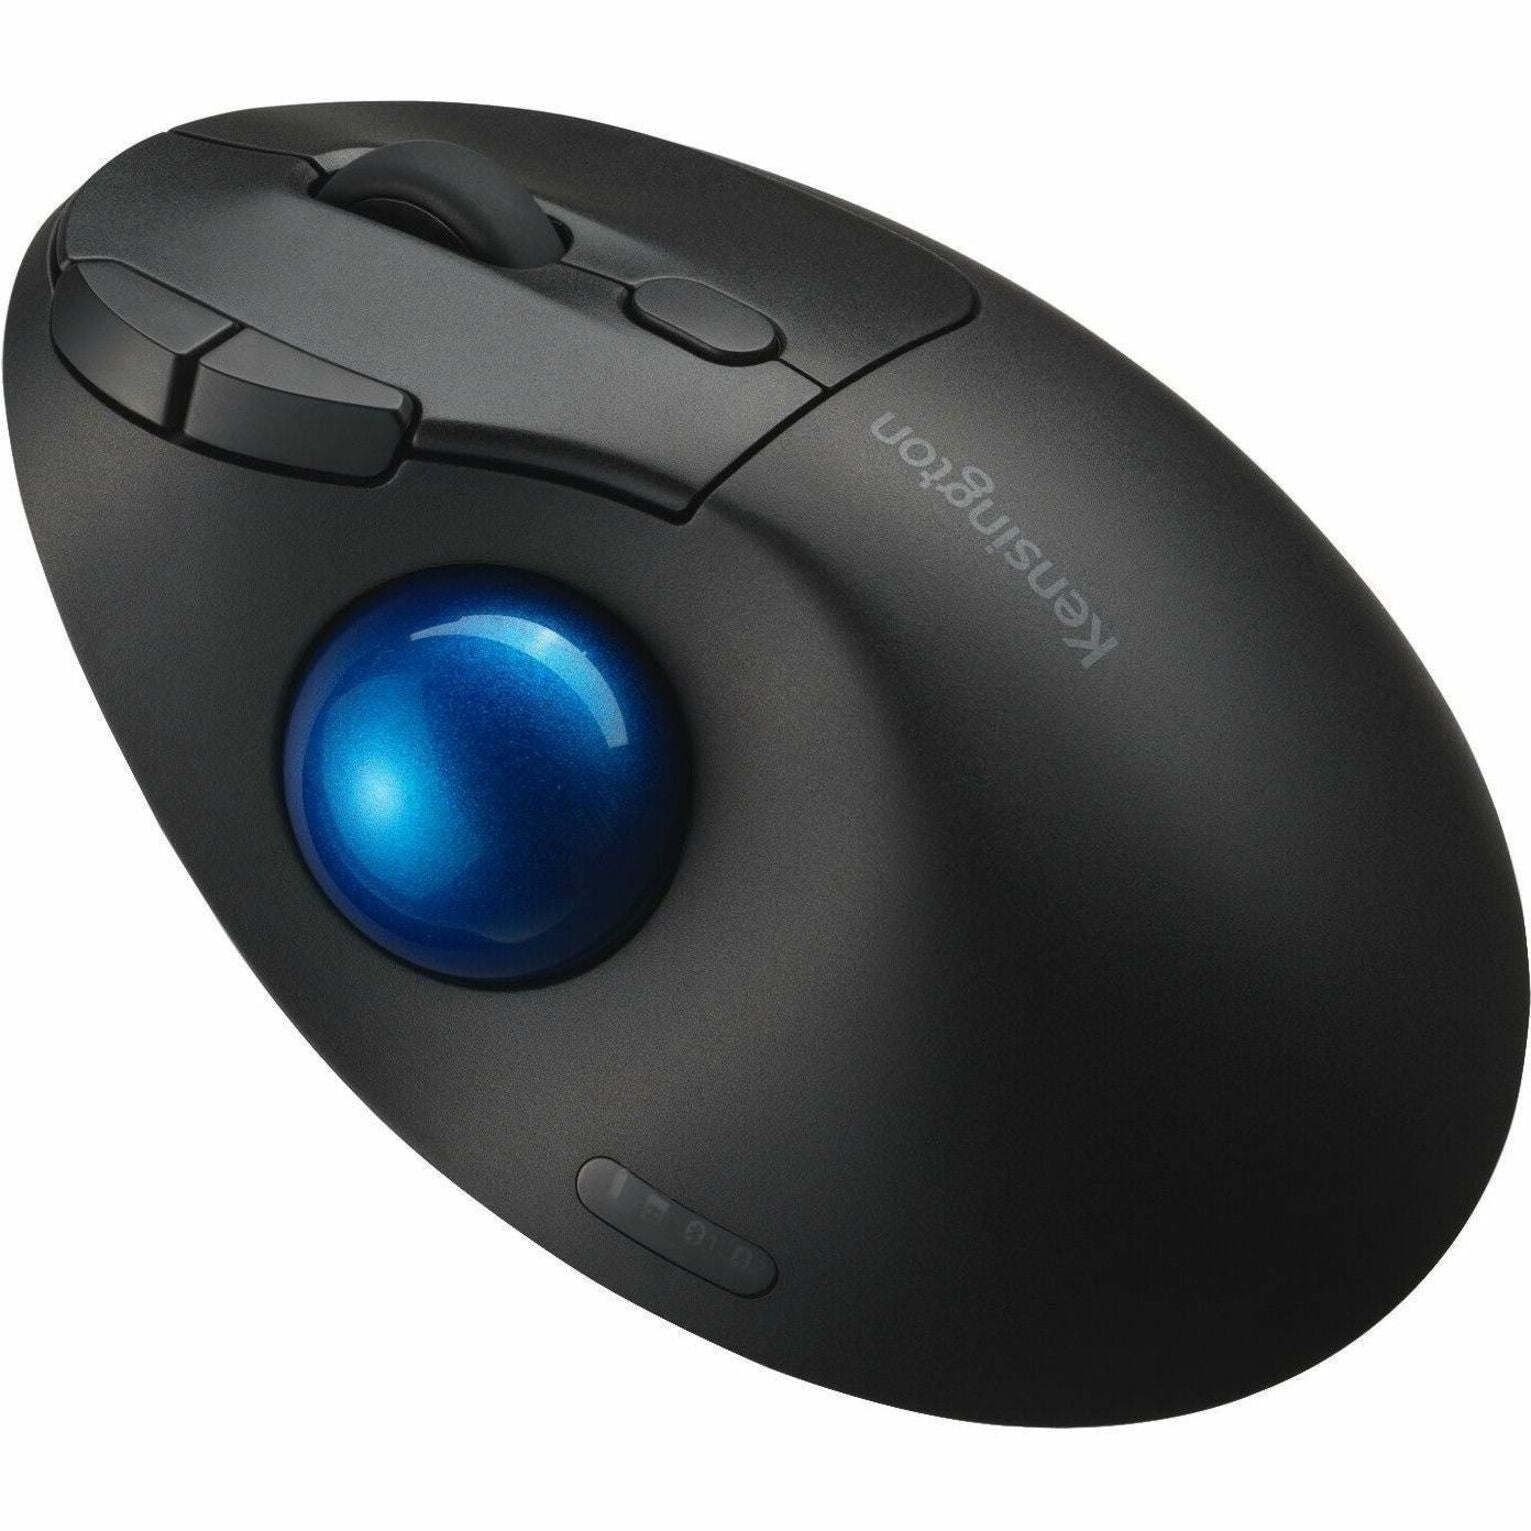 Kensington K72194WW Pro Fit TB450 Mouse, Wireless Bluetooth Trackball, 1600 DPI, Black